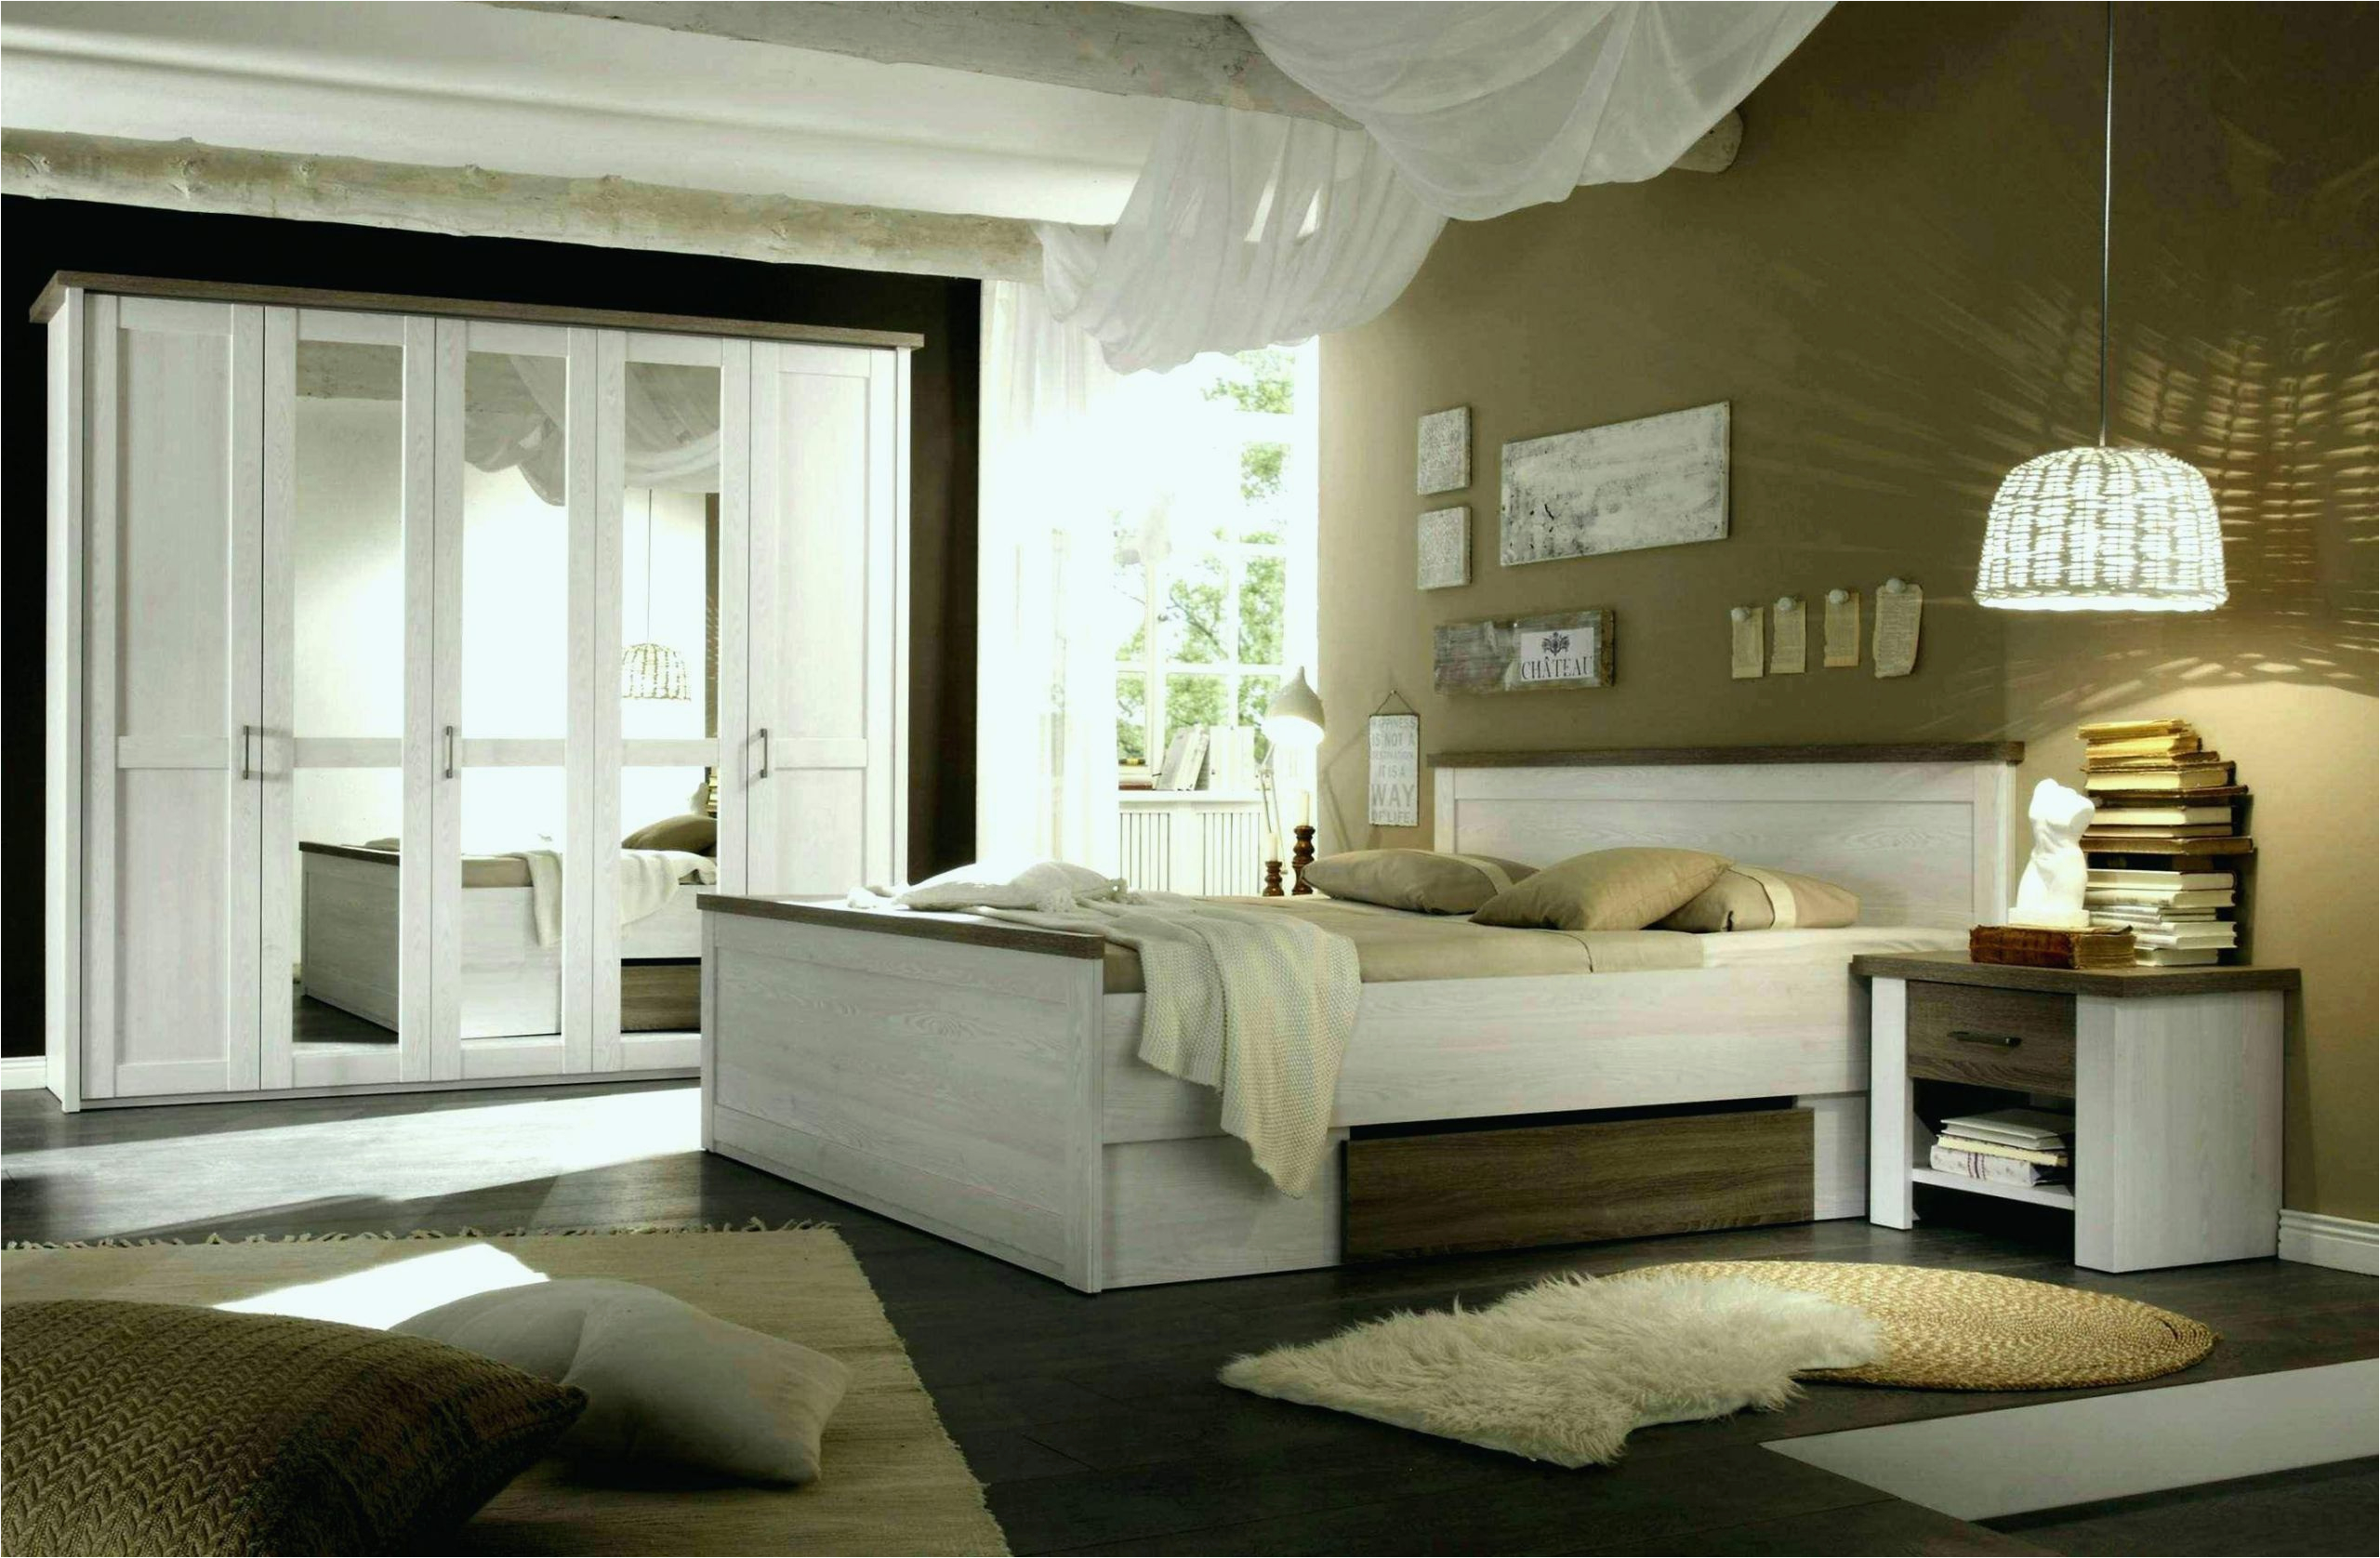 gardinen furs wohnzimmer genial 30 luxus scheibengardinen fur schlafzimmer buch of gardinen furs wohnzimmer 1 scaled